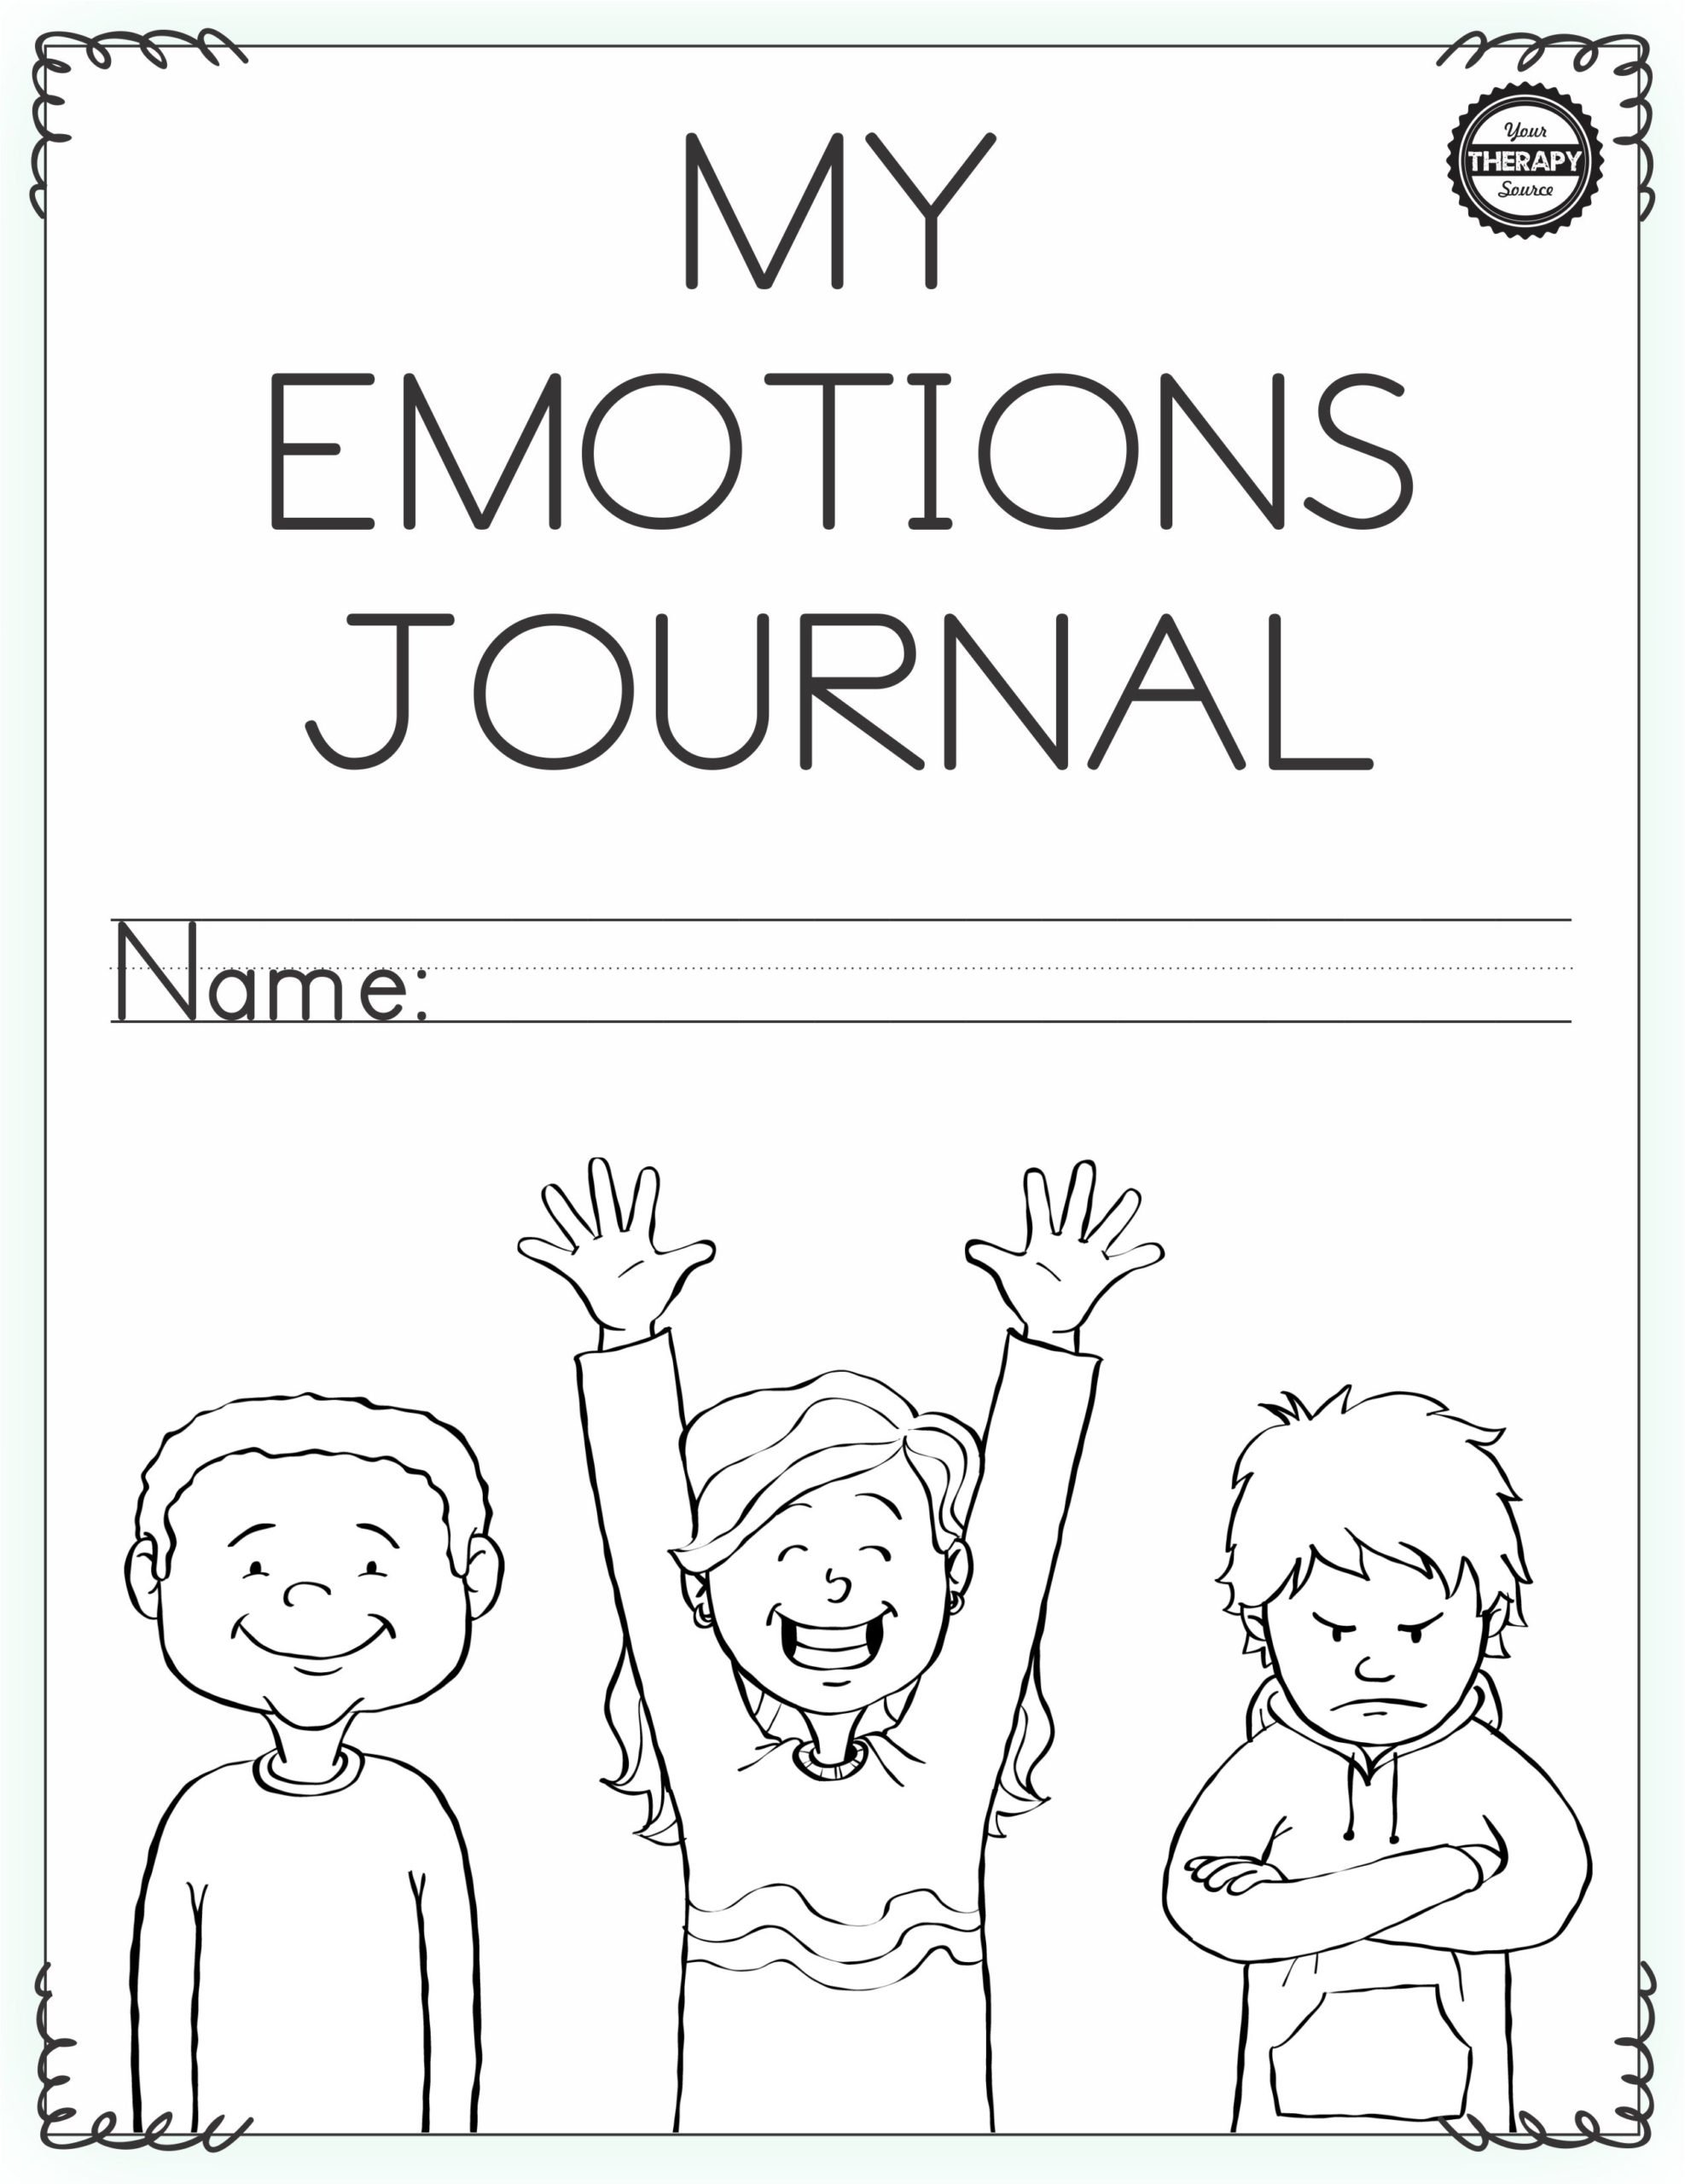 Emotional Regulation Worksheets For Boys And Girls 